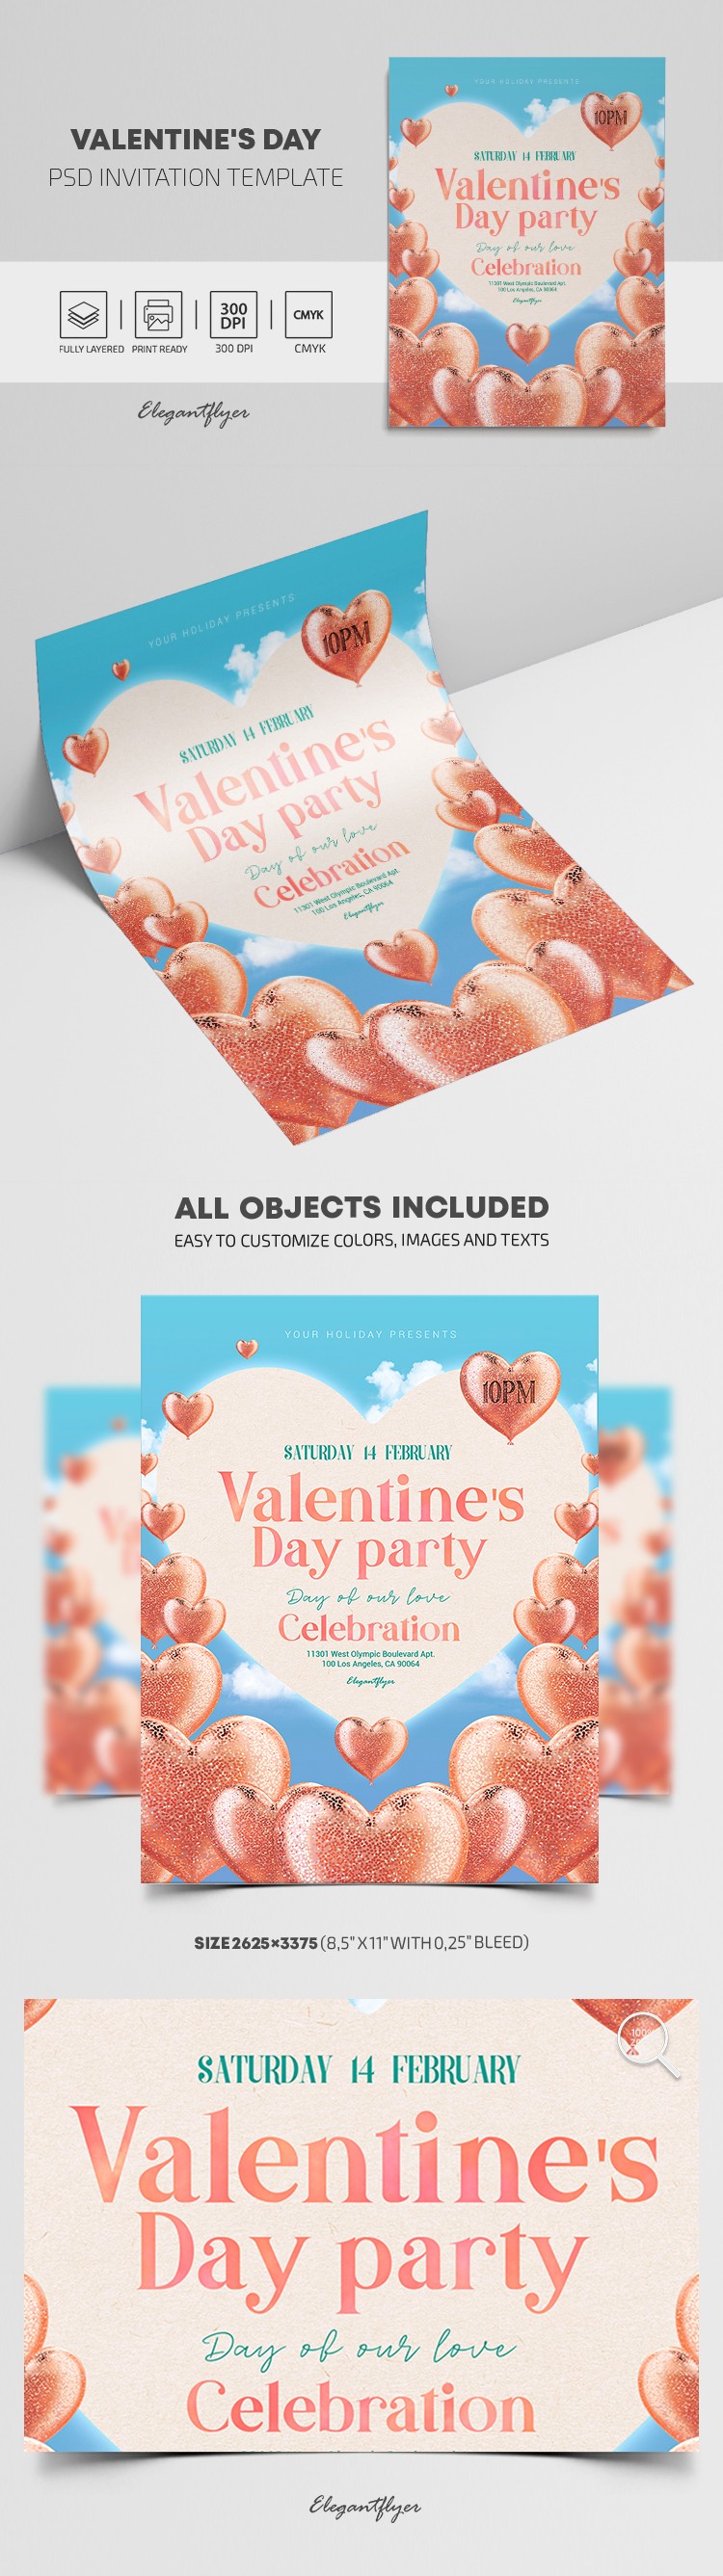 Invitation pour la Saint-Valentin by ElegantFlyer